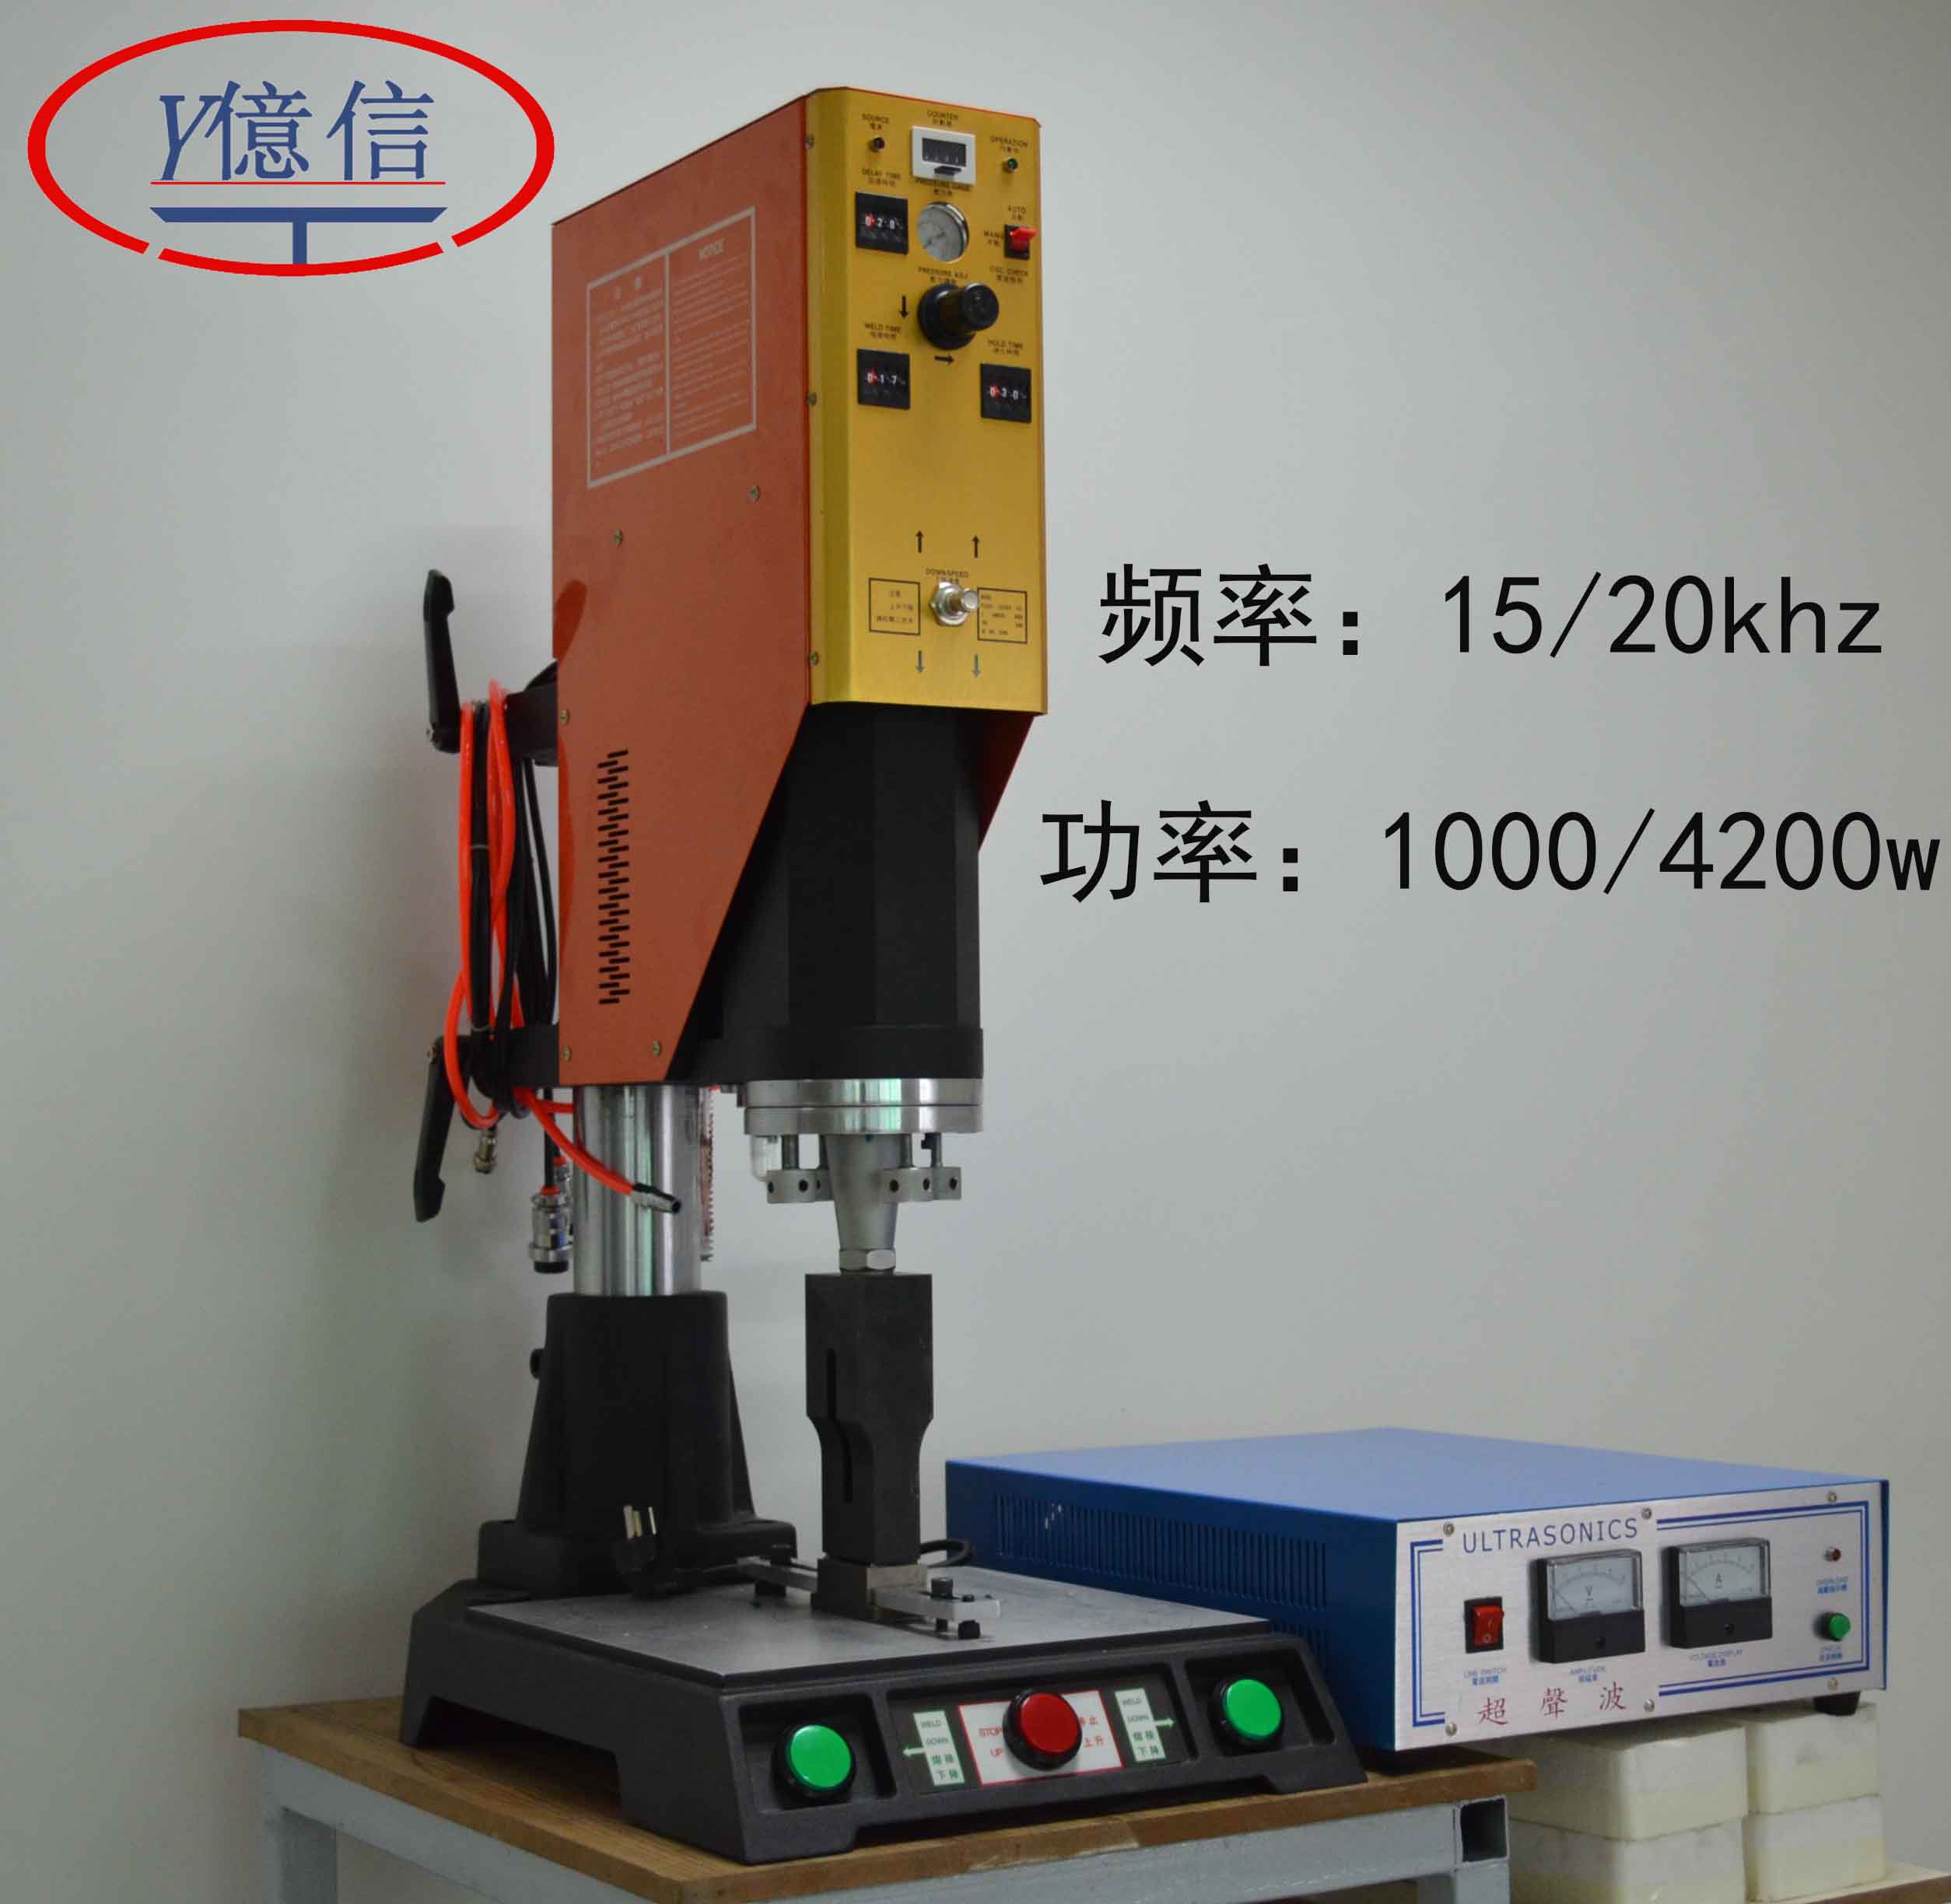 亿信厂家直销15/20khz超声波焊接机 超音波塑焊机